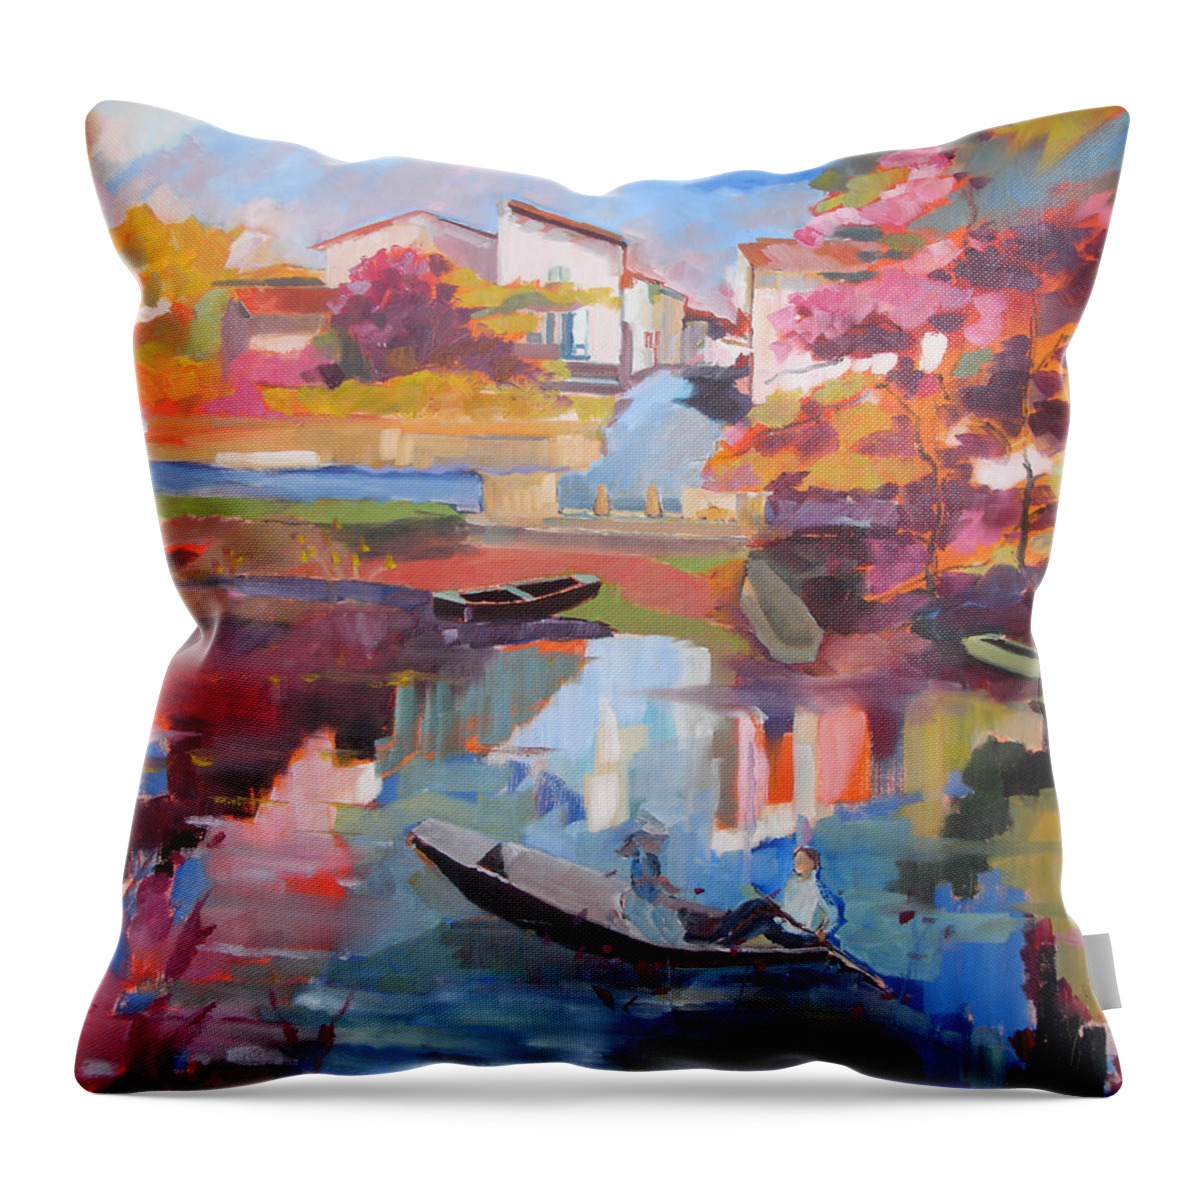 Niortais Throw Pillow featuring the painting Balade Niortaise by Kim PARDON